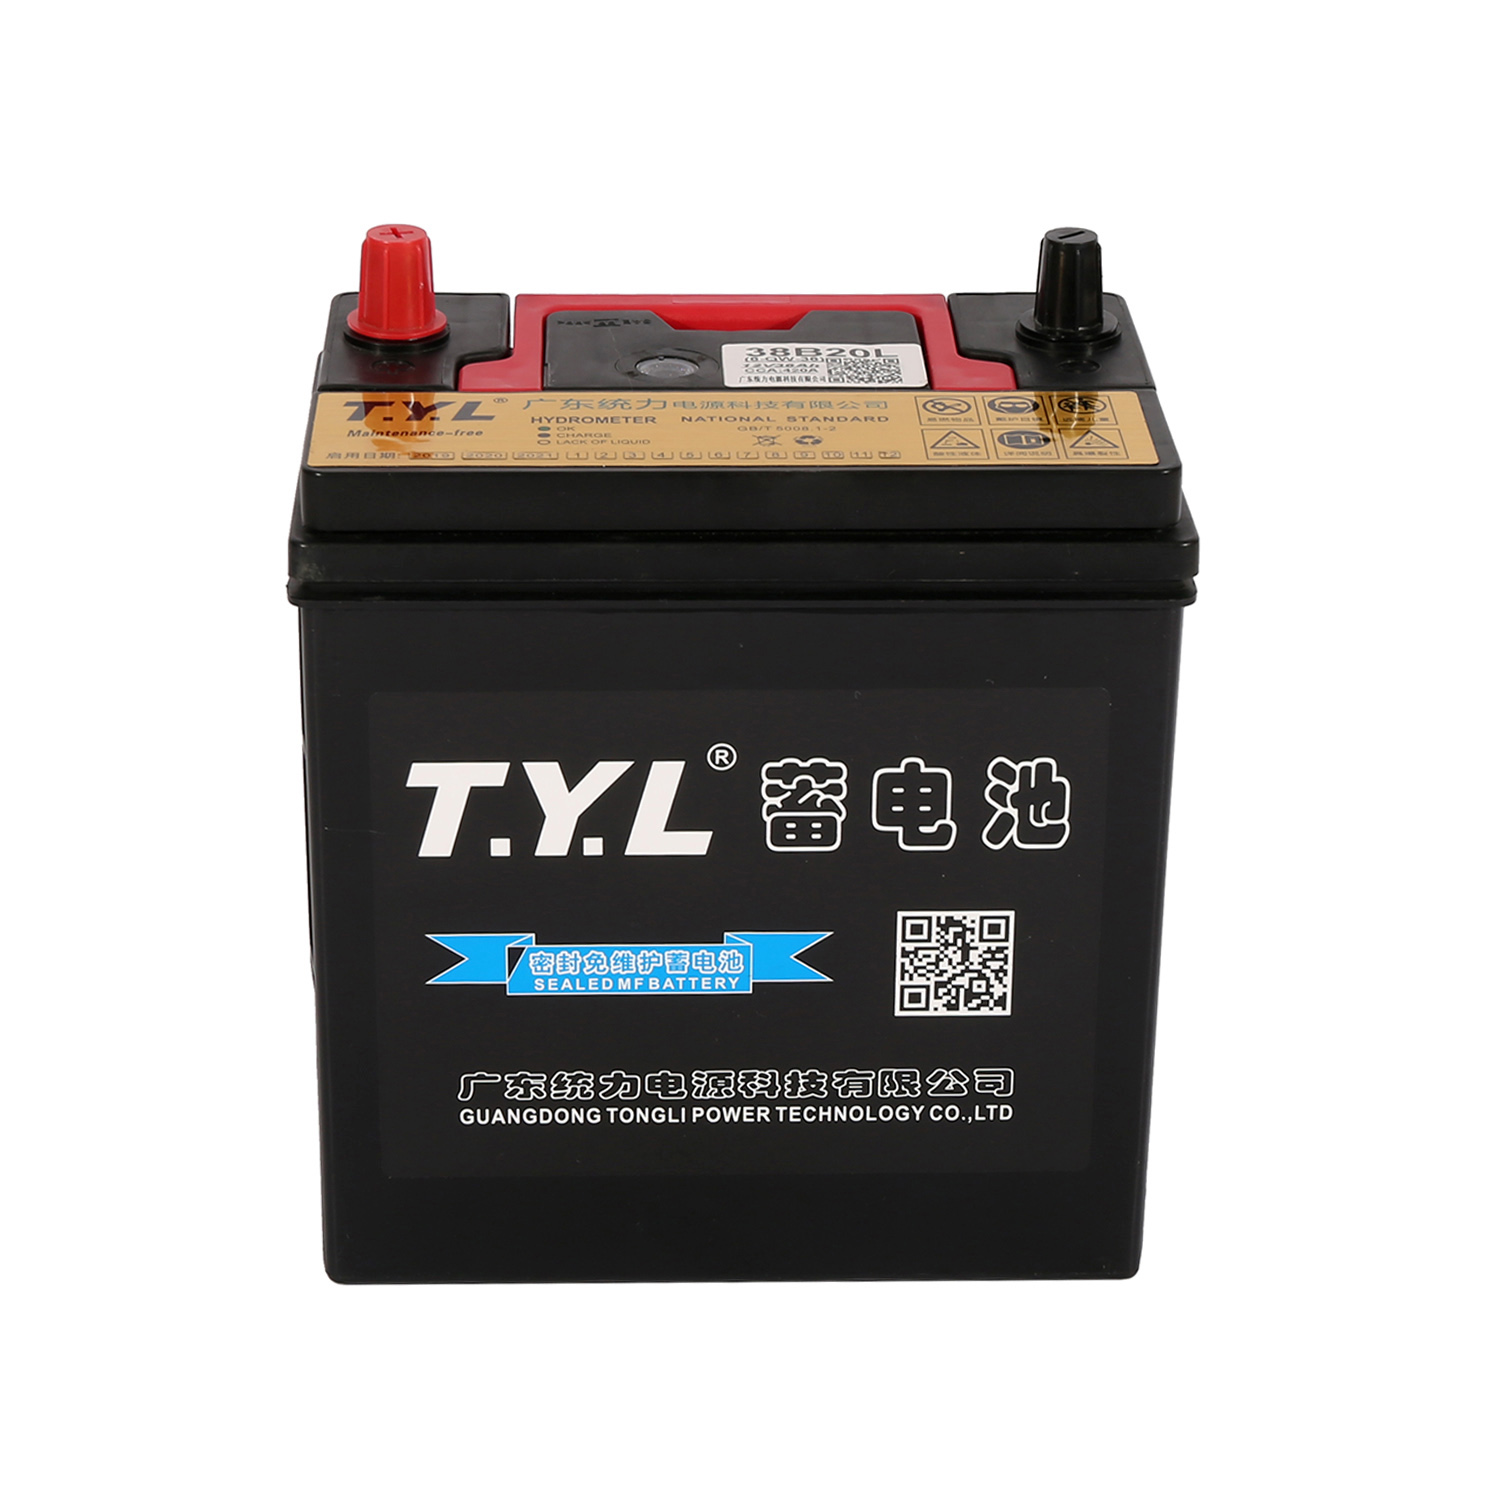 12V36AH høyytelses bilbatteri med negativ terminal for hybridbiler